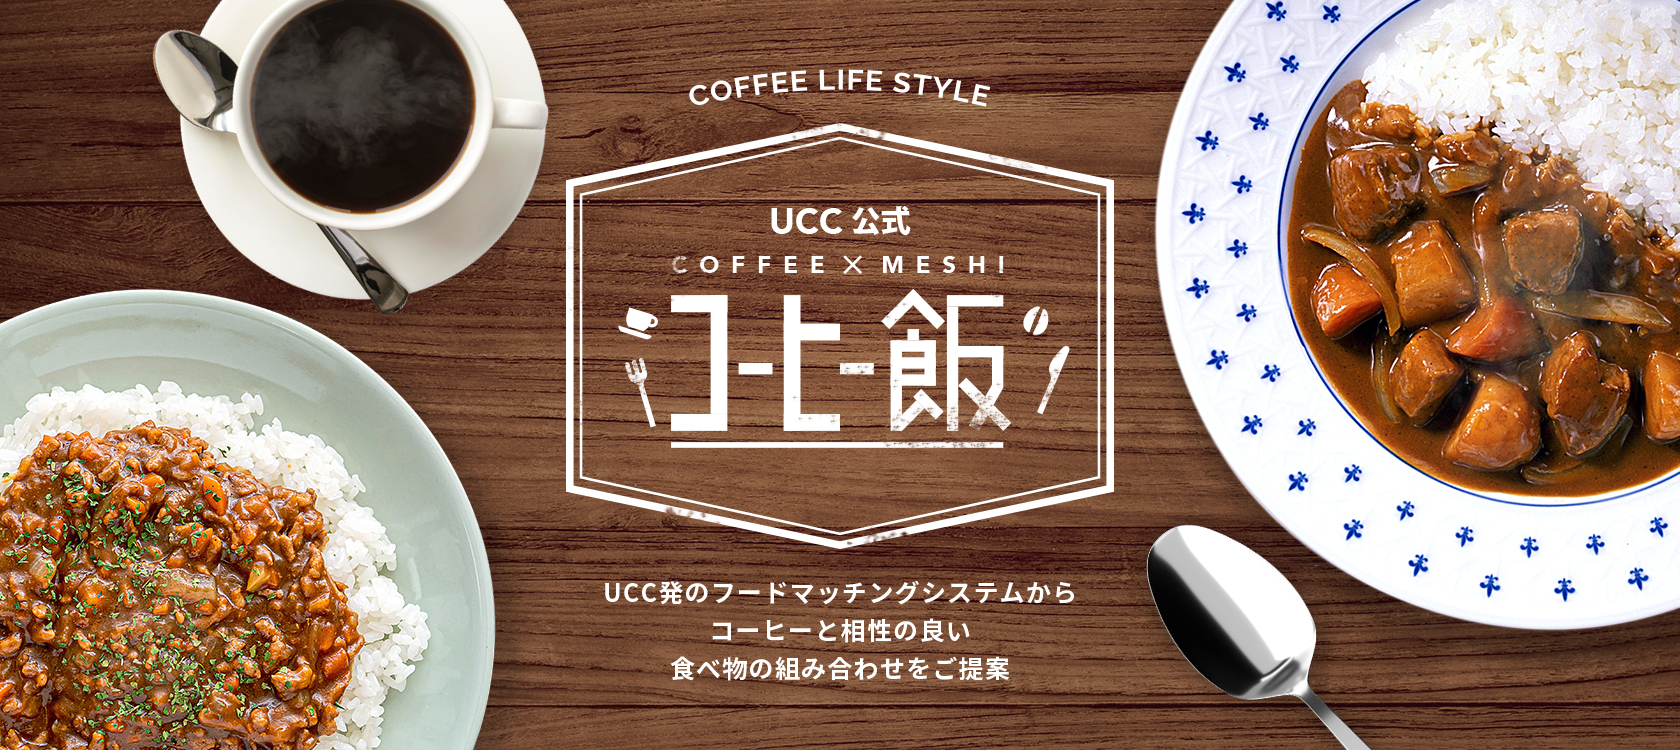 コーヒーと料理の意外な組み合わせを提案するucc公式 コーヒー飯 1月22日 カレーの日 にちなんで コーヒー カレーの組み合わせを発表 Ucc上島珈琲株式会社のプレスリリース